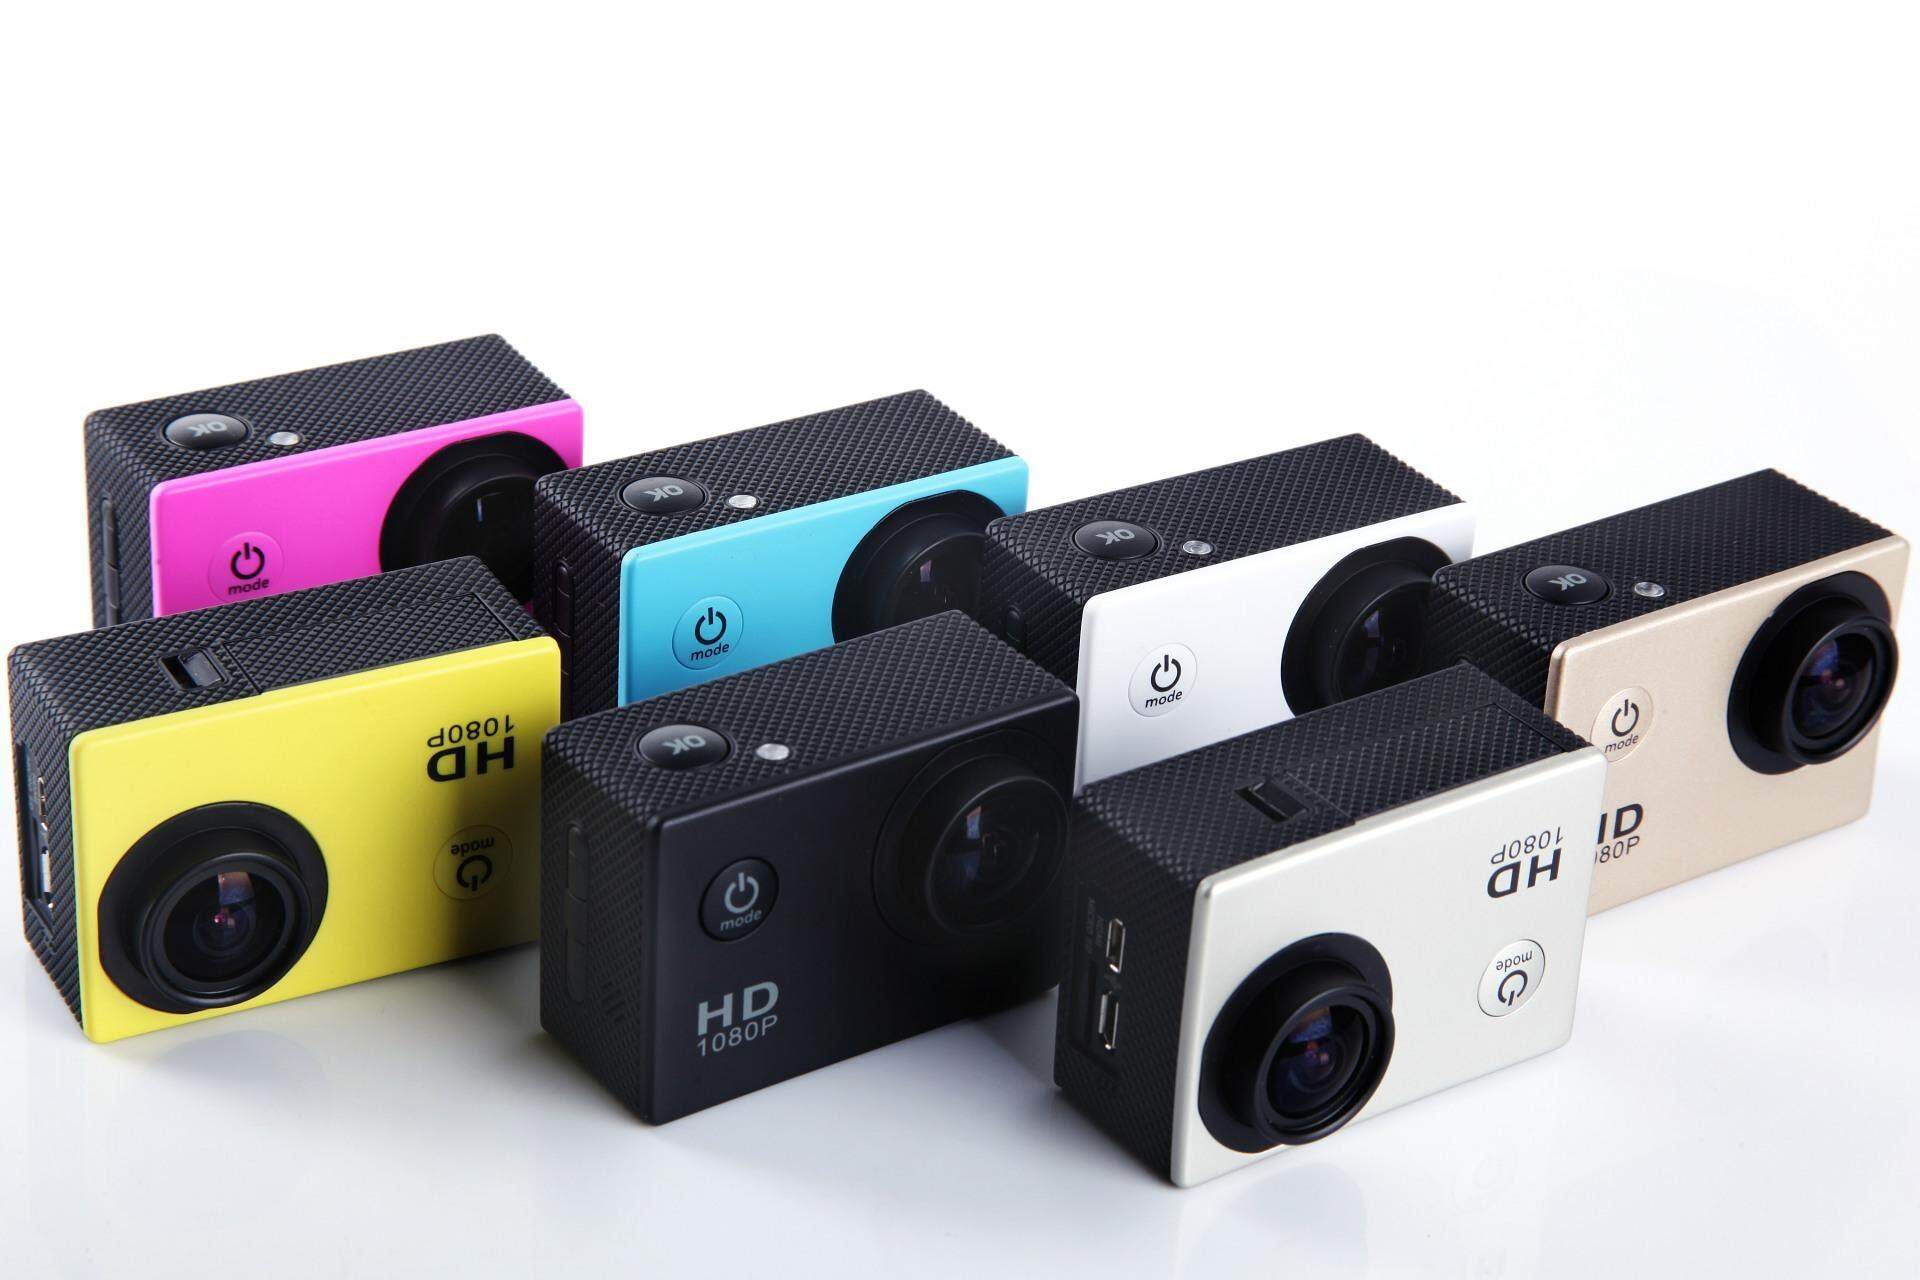 YOYOCAM กล้อง ติดหมวก กล้องรถ Action Camera มีจอ LCD คุ้มที่สุด HD 1080P กันน้ำ 30 เมตร มุมกว้าง 140° พร้อมอุปกรณ์ เคสกันน้ำ